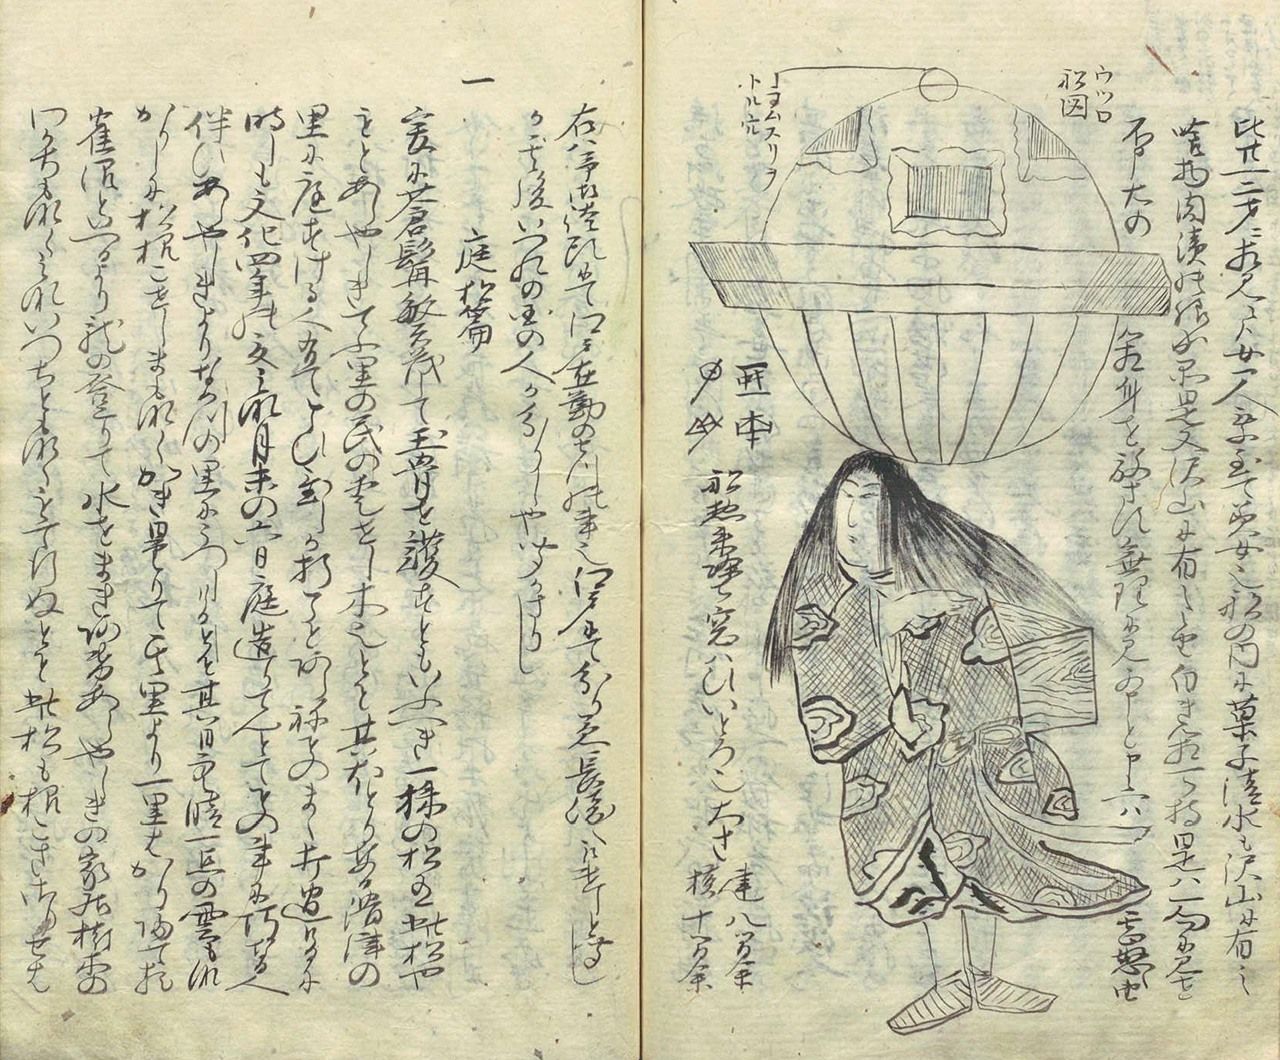 驹井乘邨的《莺宿杂记》（1815年左右），他曾是松平定信的家臣（国会图书馆藏书）